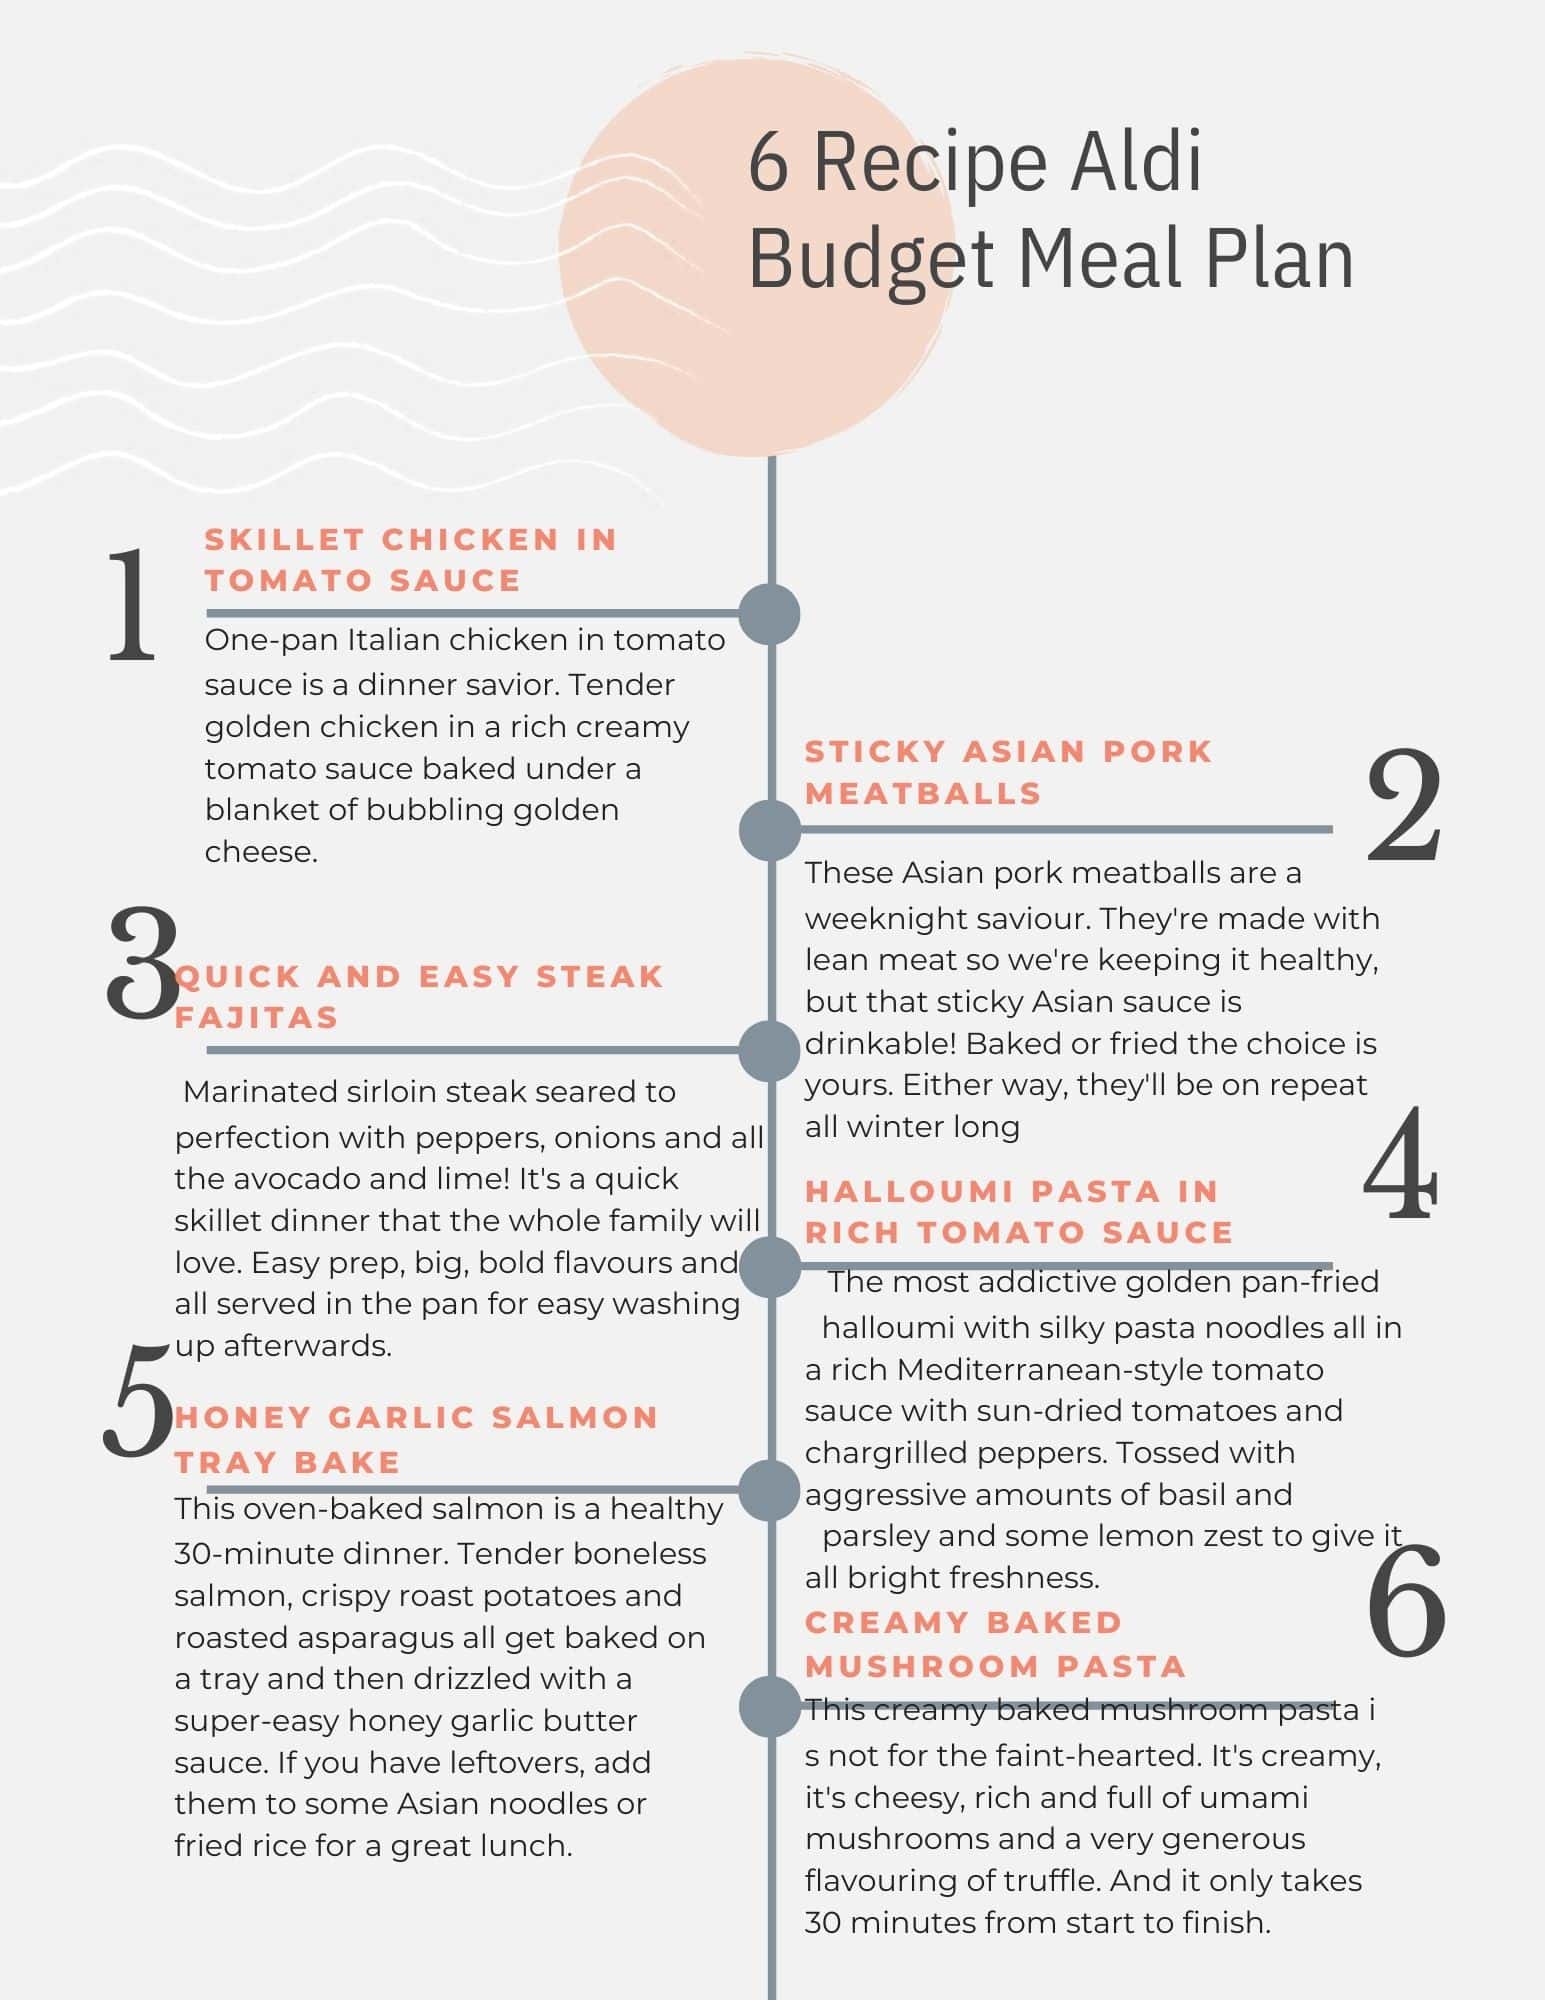 Aldi meal plan tip sheet.